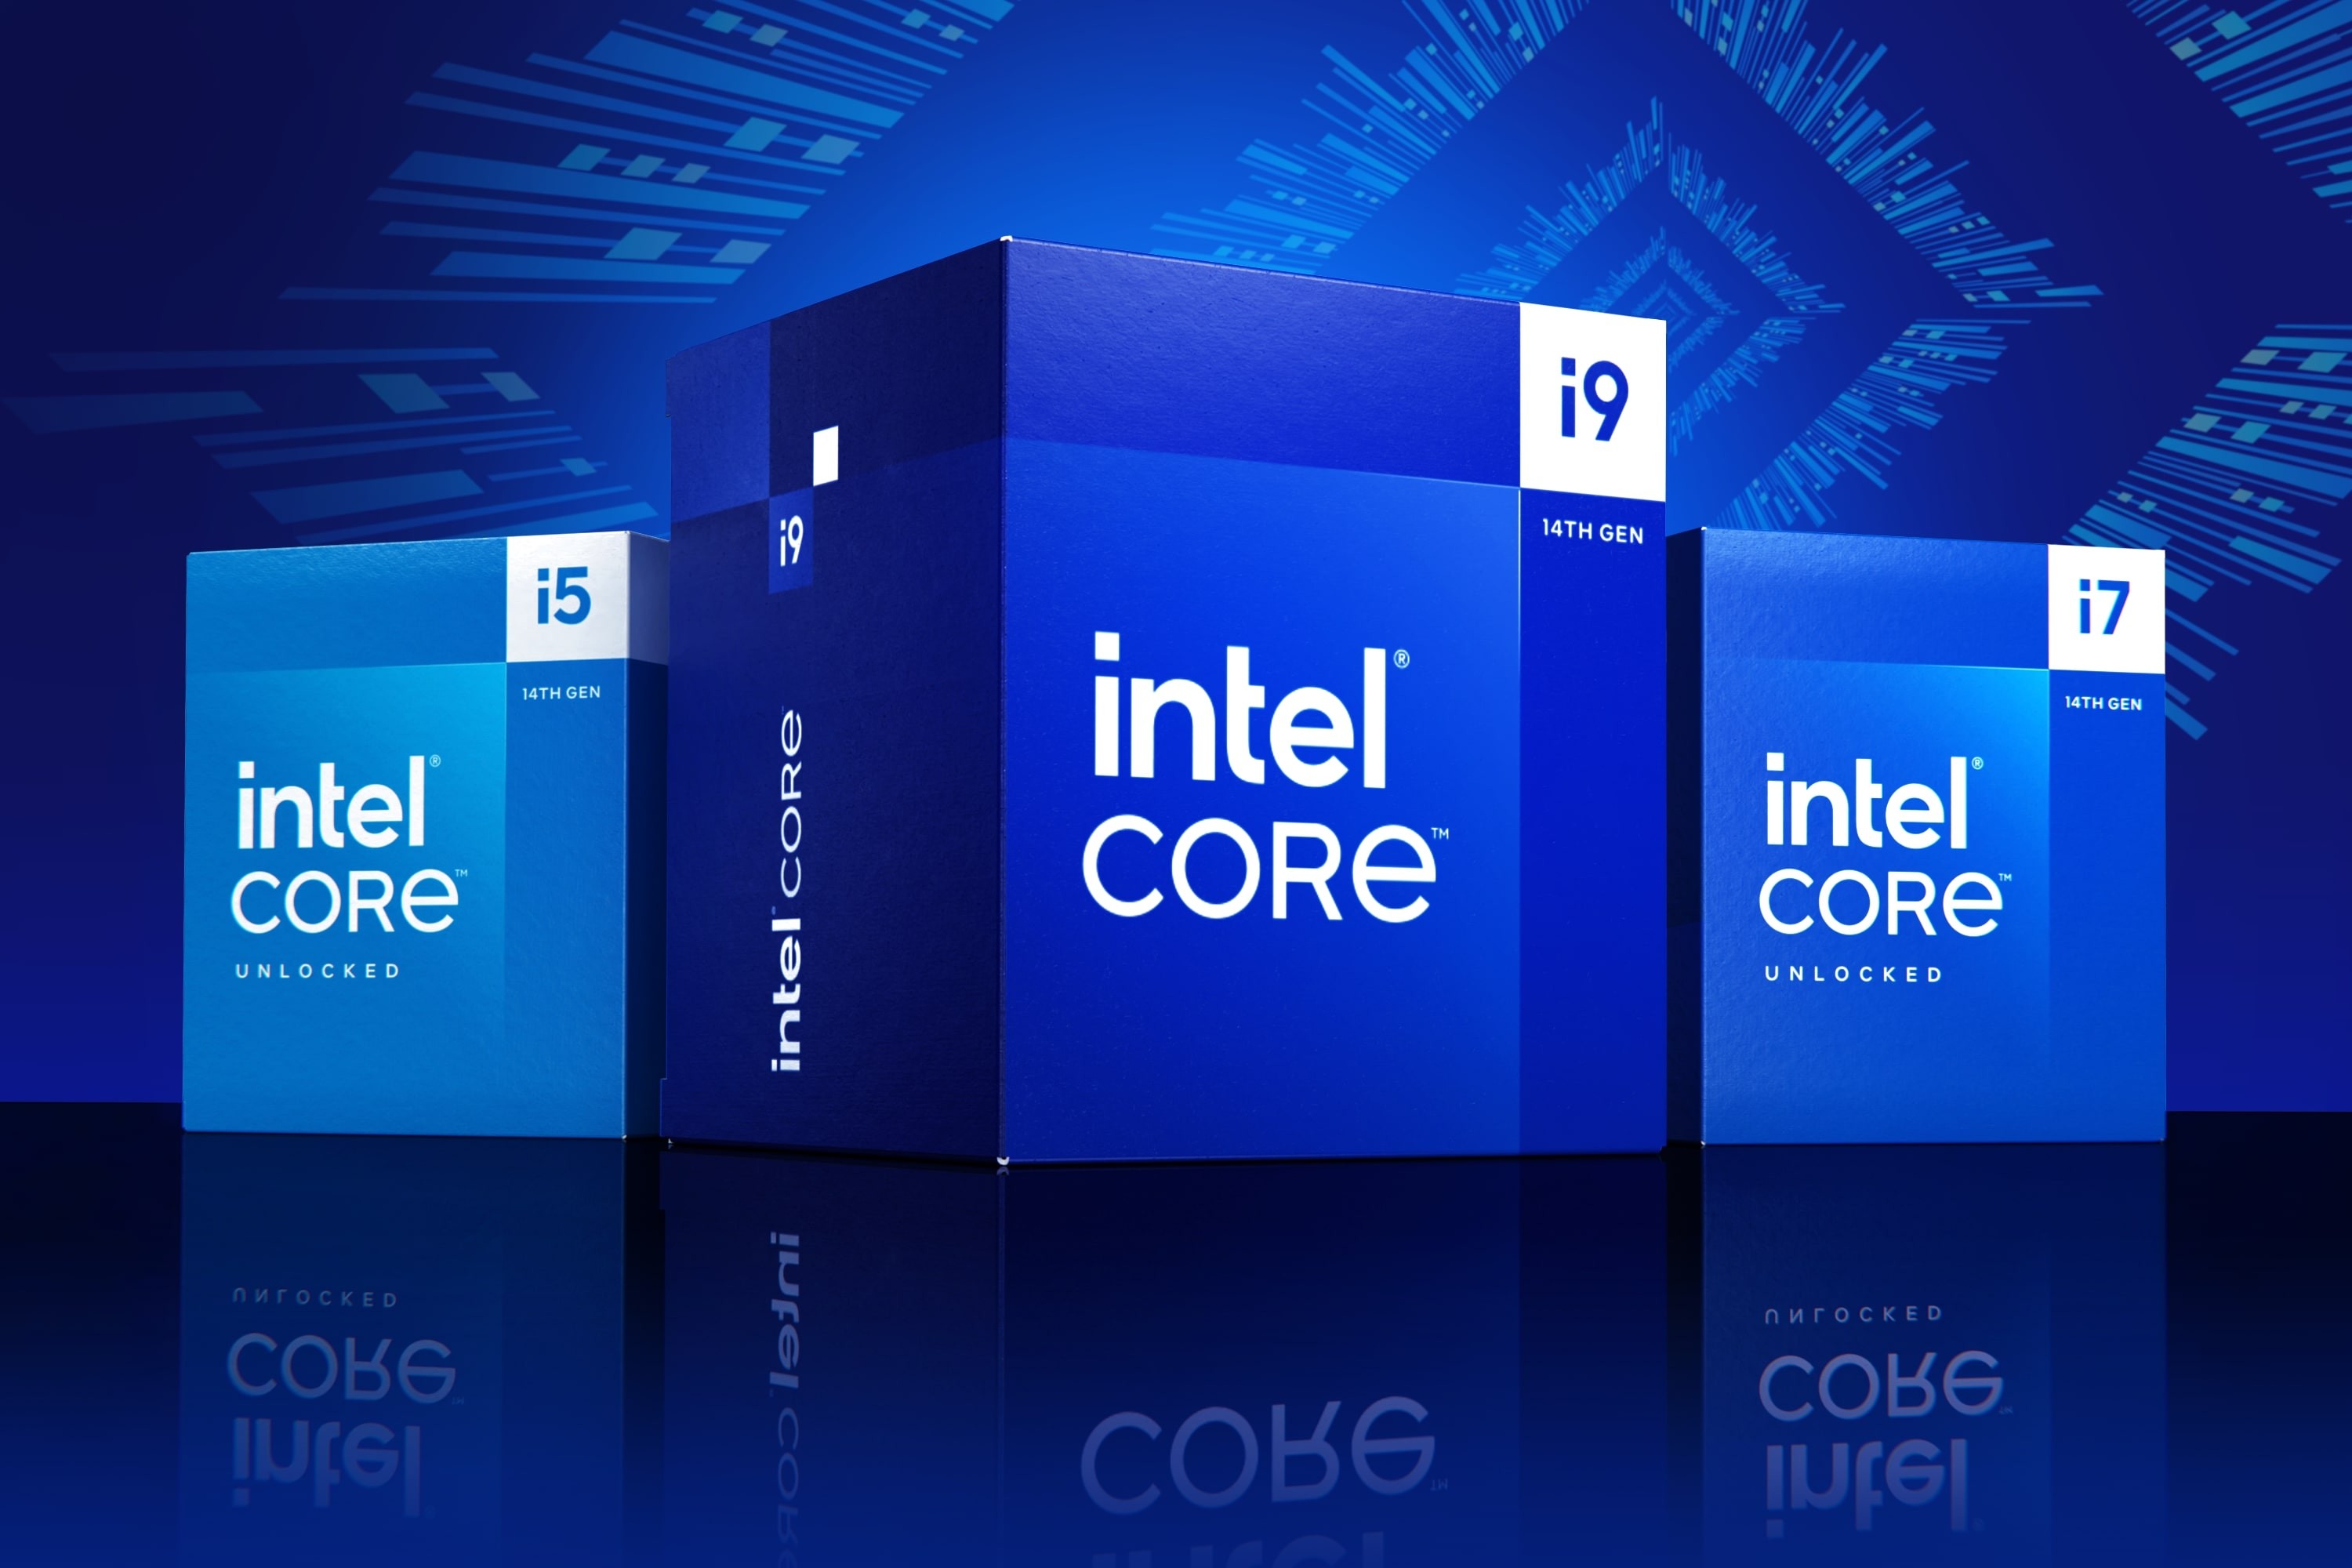 intel-core-processors-14-gen-01-1697501430.jpg